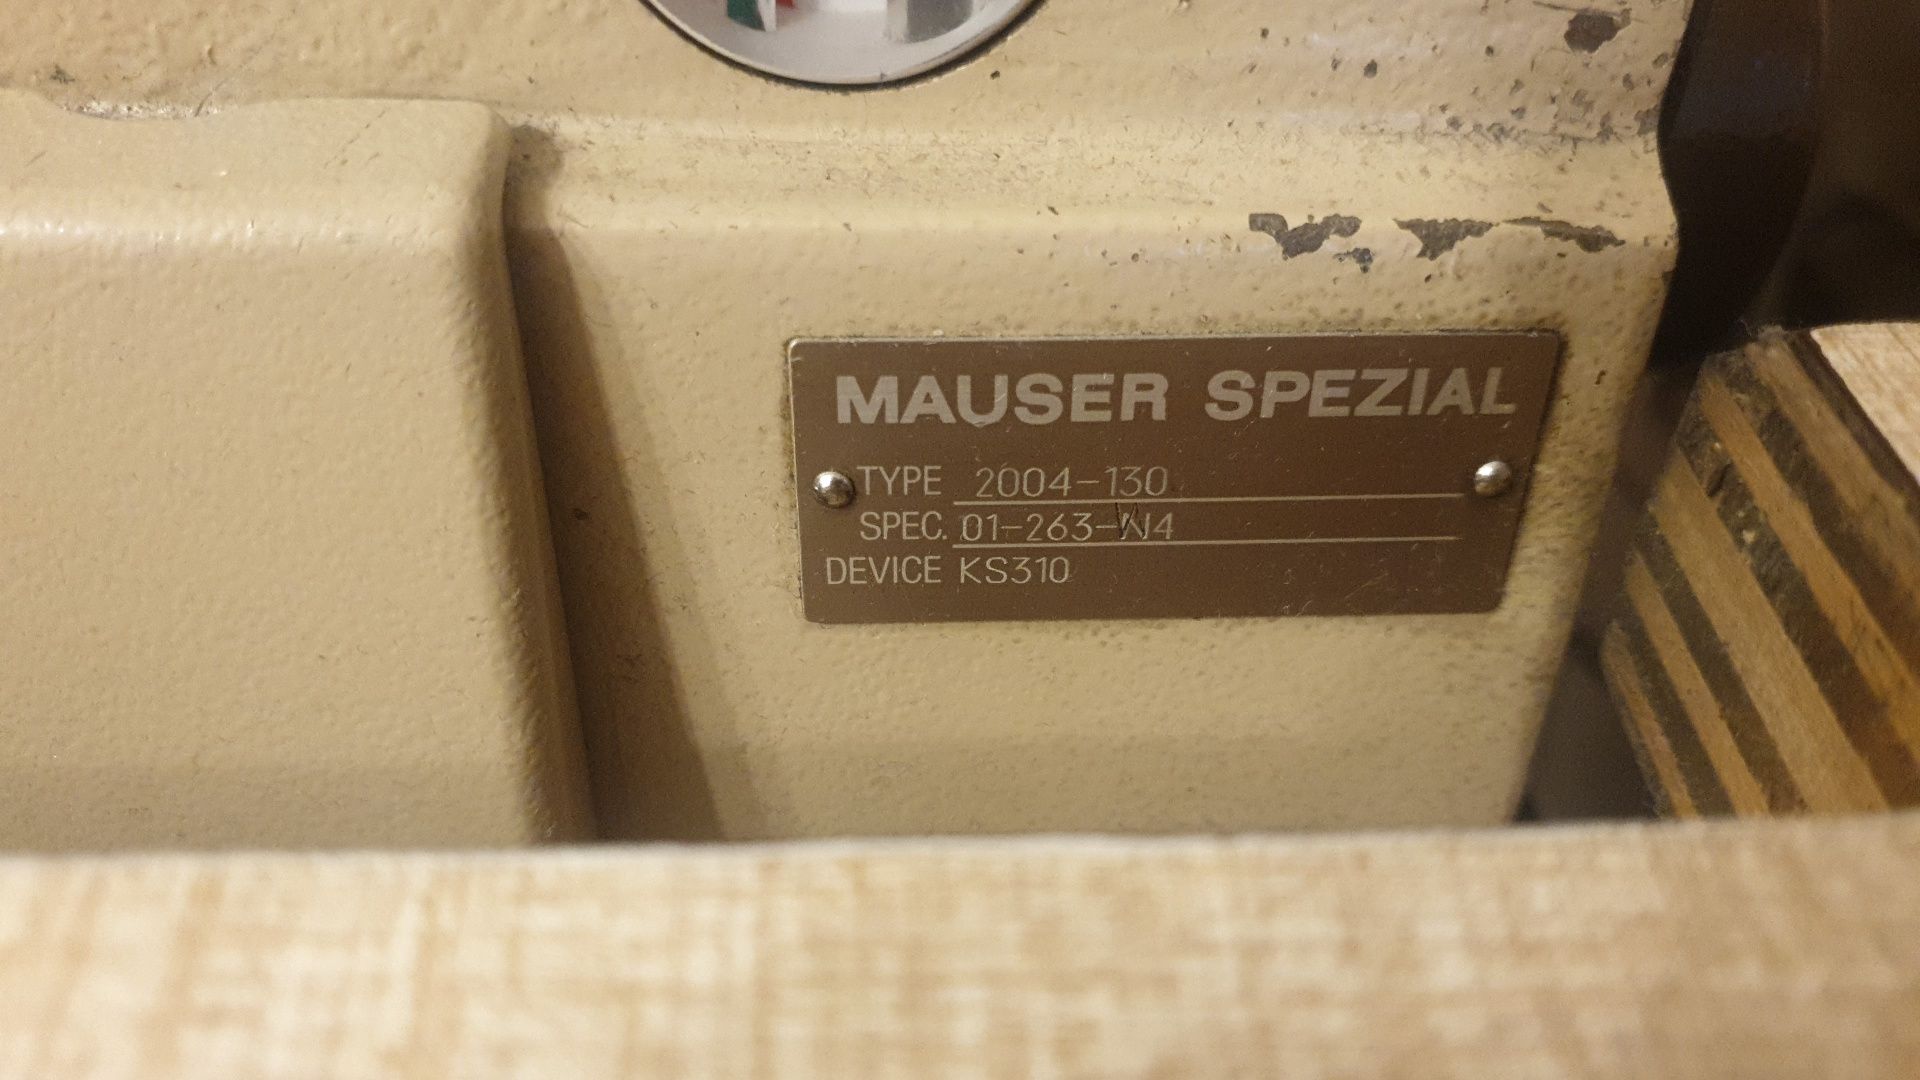 Немецкая промышленная машинка Mauzer spezial